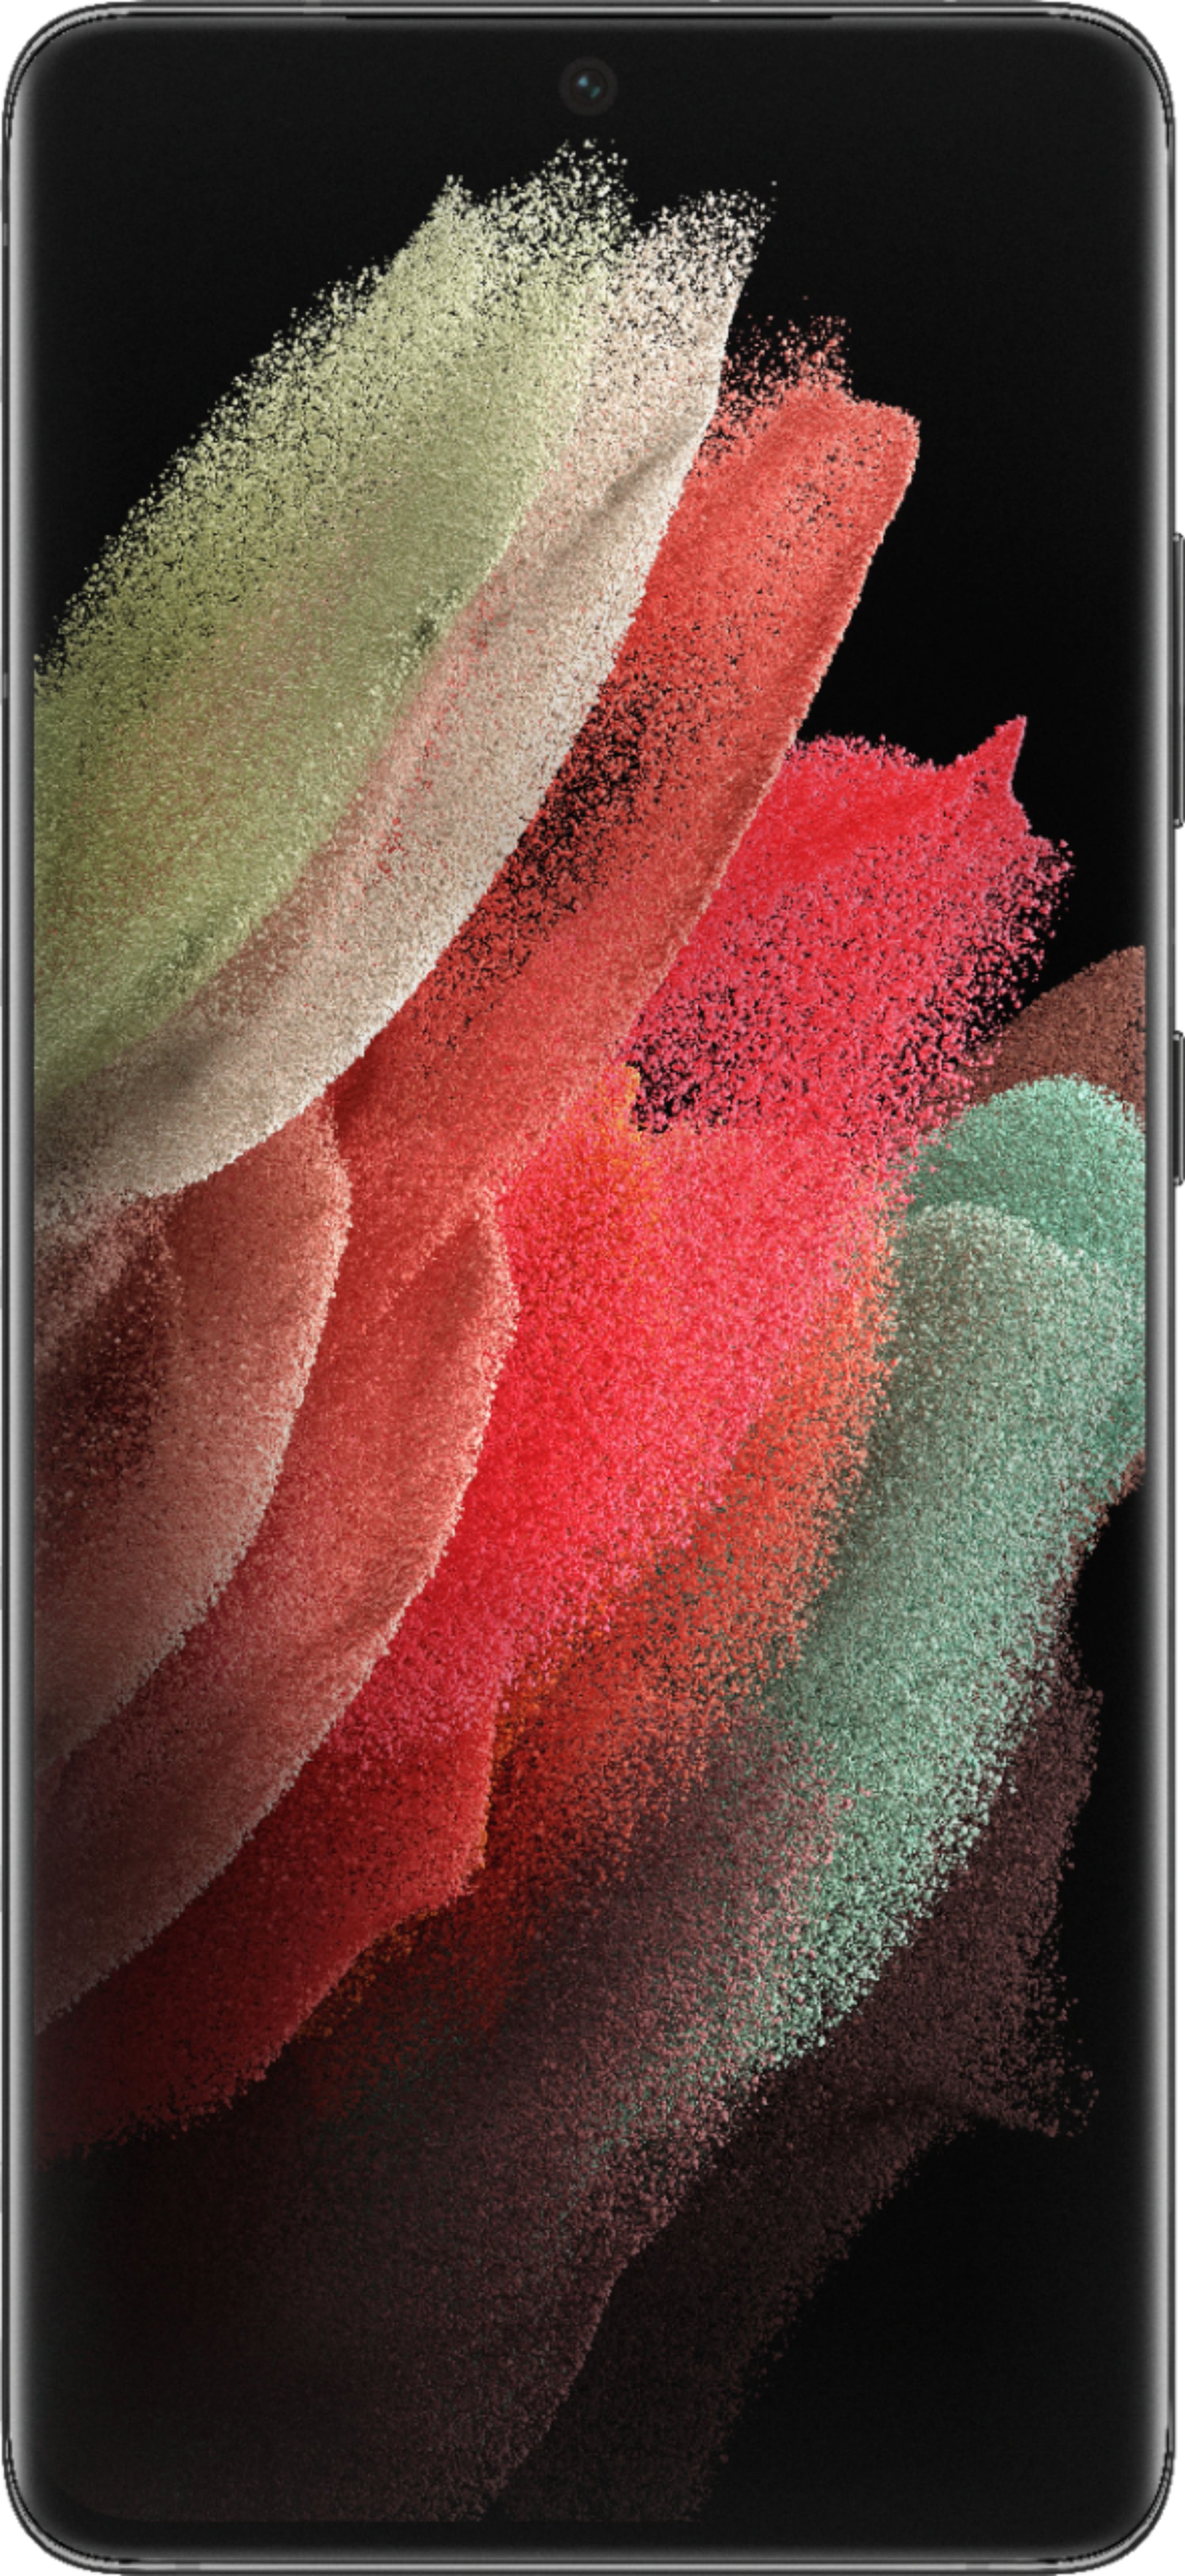 S21 Ultra Celular Barato 8+128GB Smartphone 5.5 Polegada Celulares